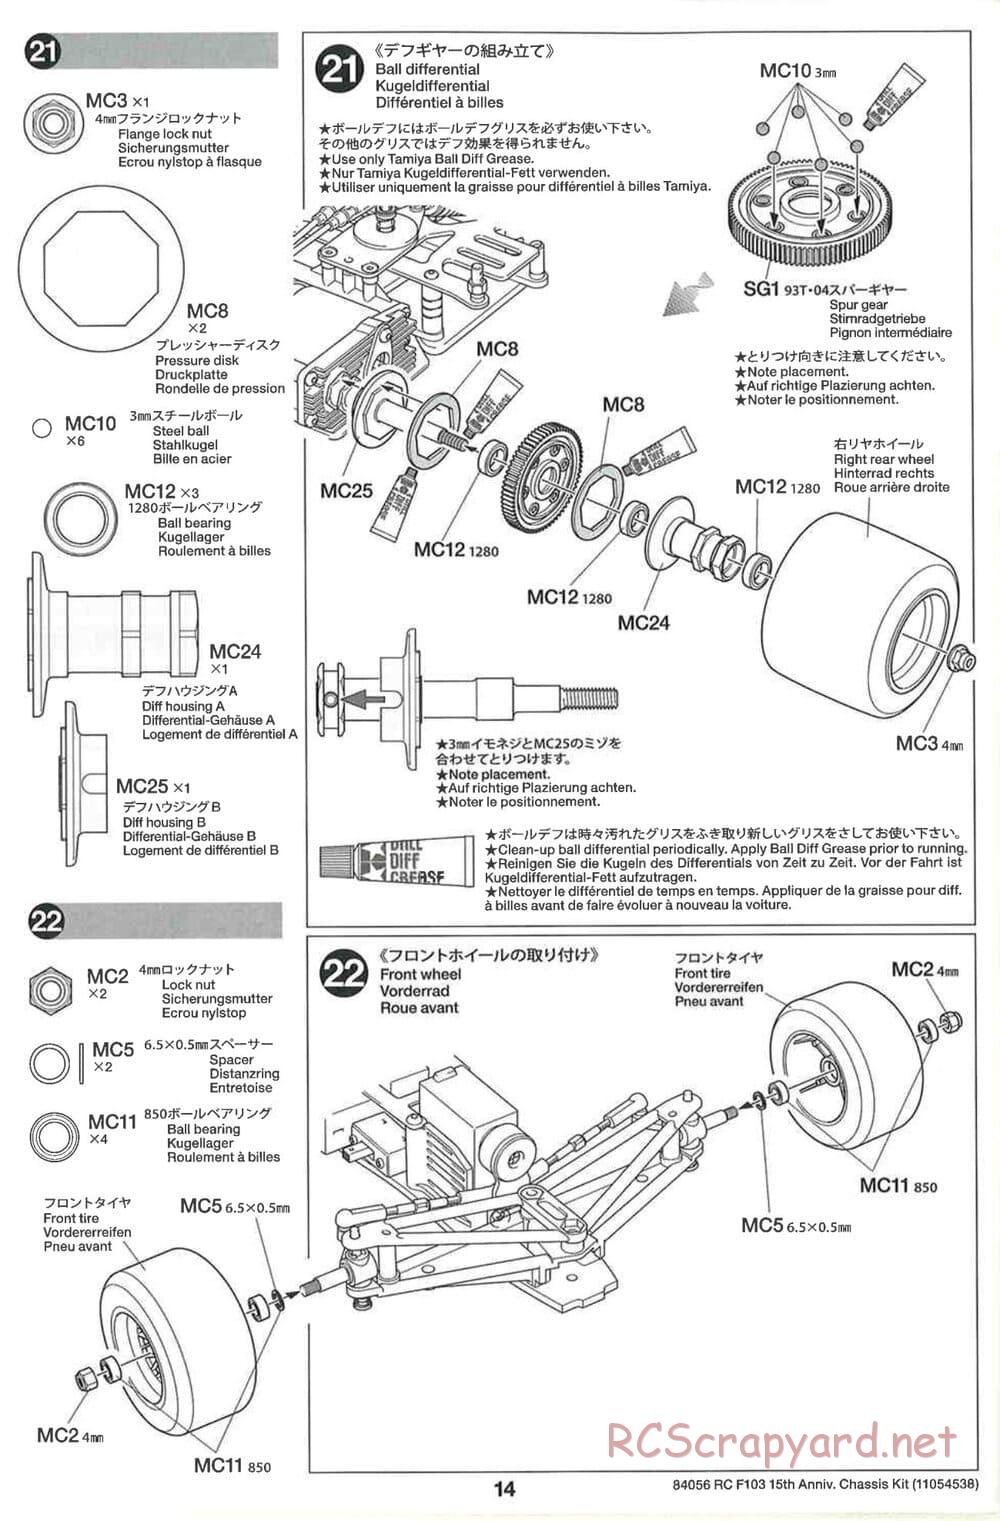 Tamiya - F103 15th Anniversary Chassis - Manual - Page 14